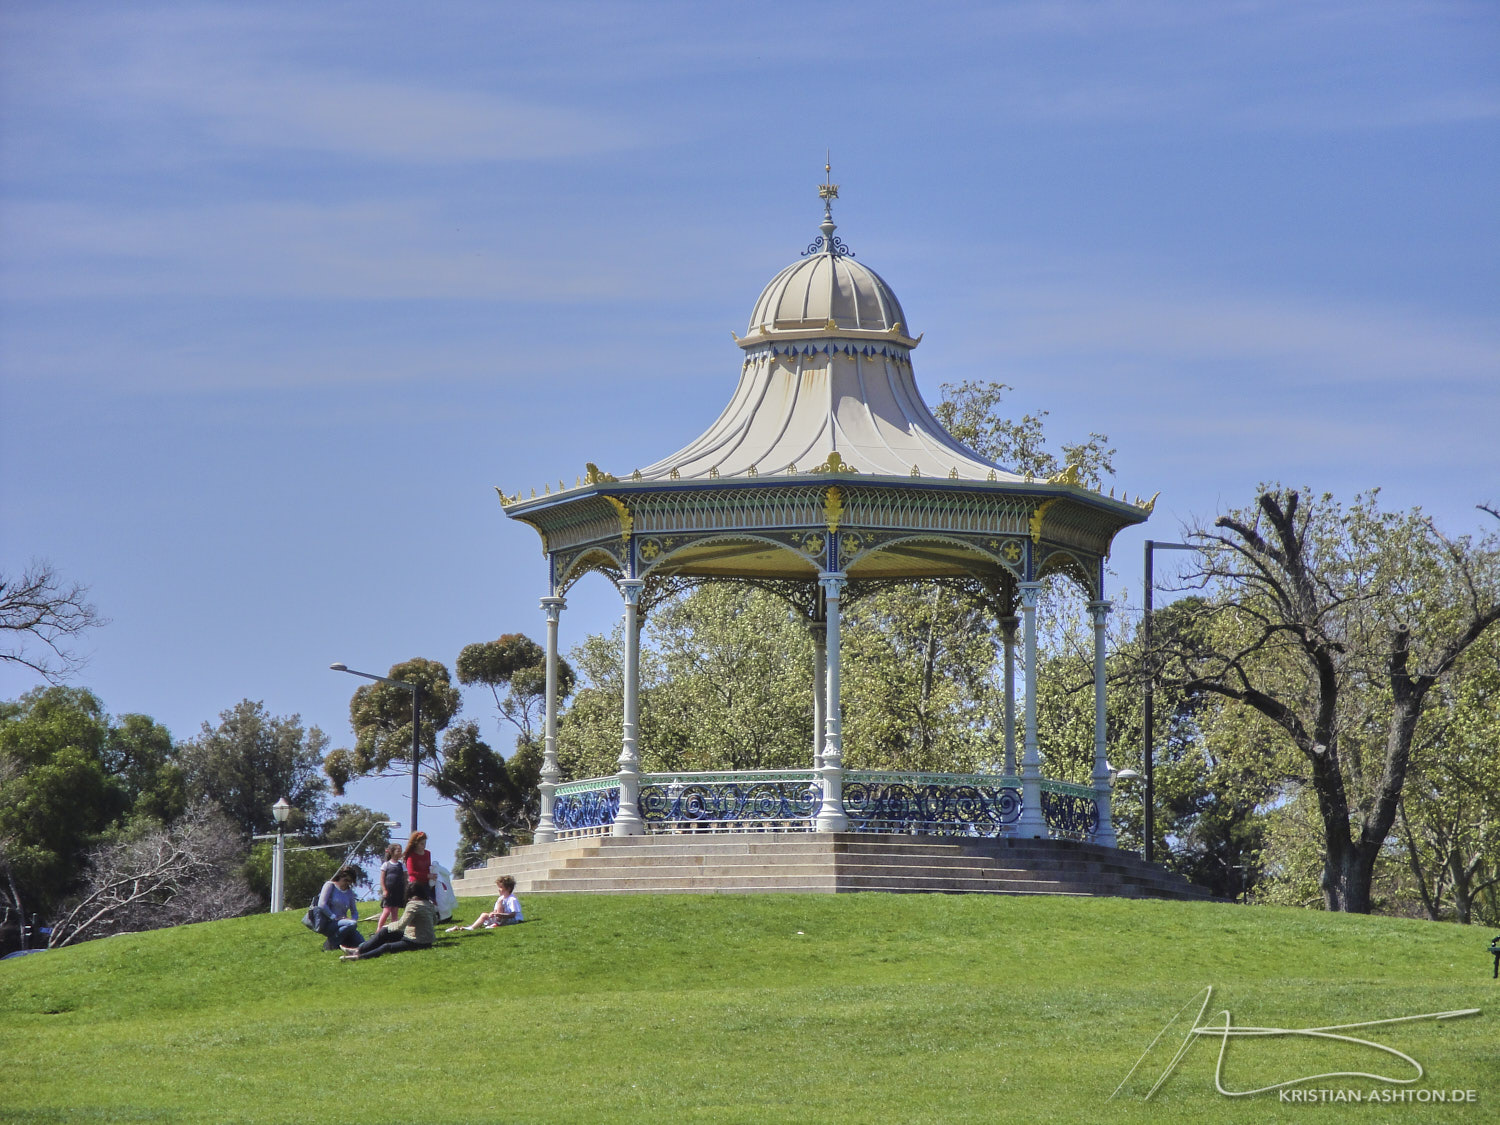 Elder Park Rotunda